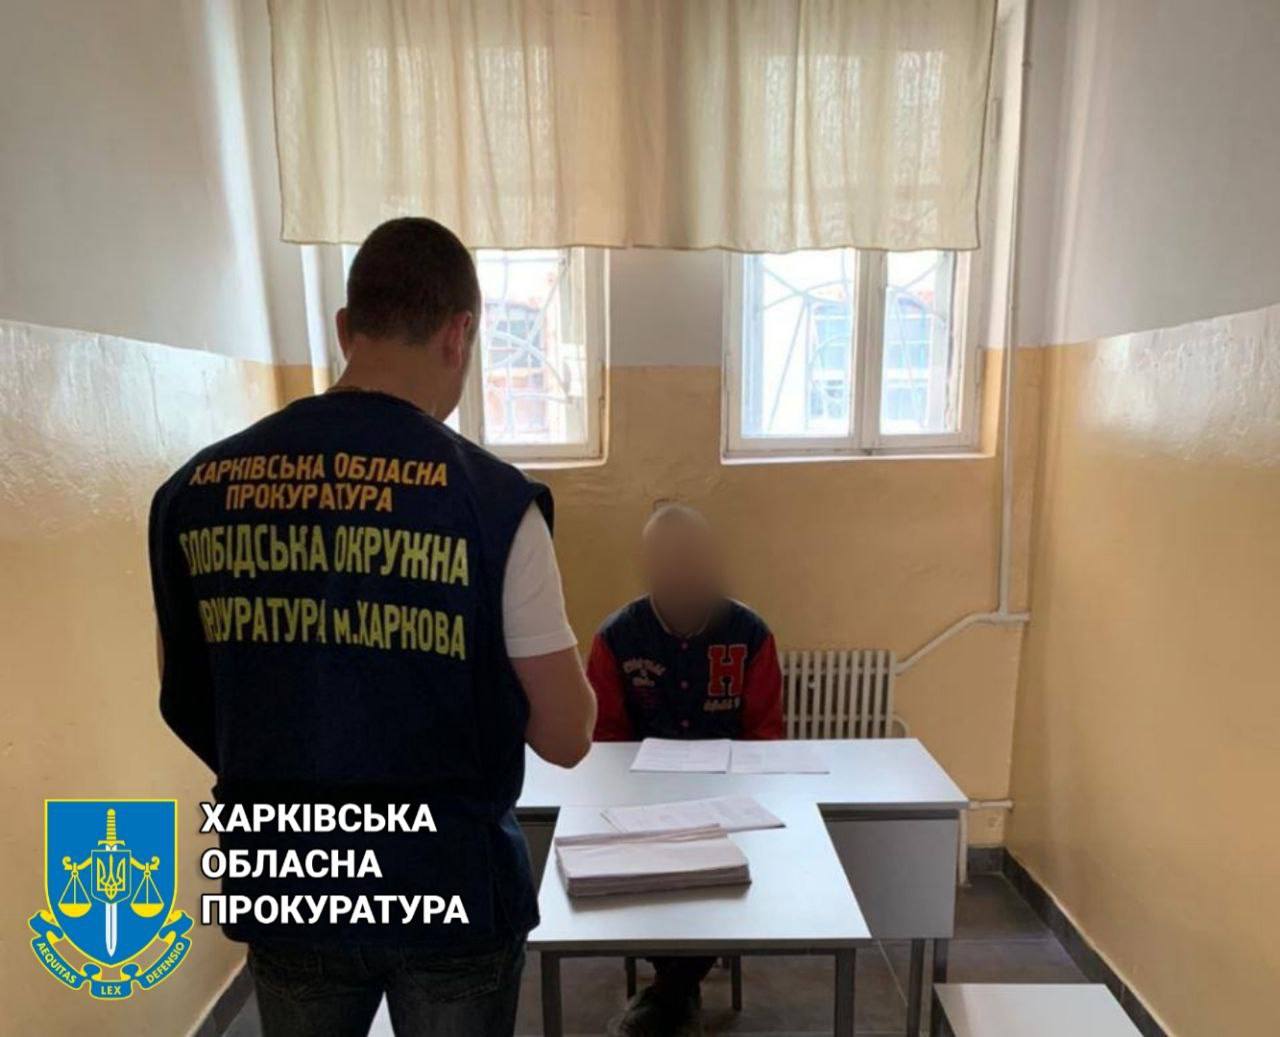 Криминал Харьков: Пойманный в Харькове грабитель в бегах ждет суда 